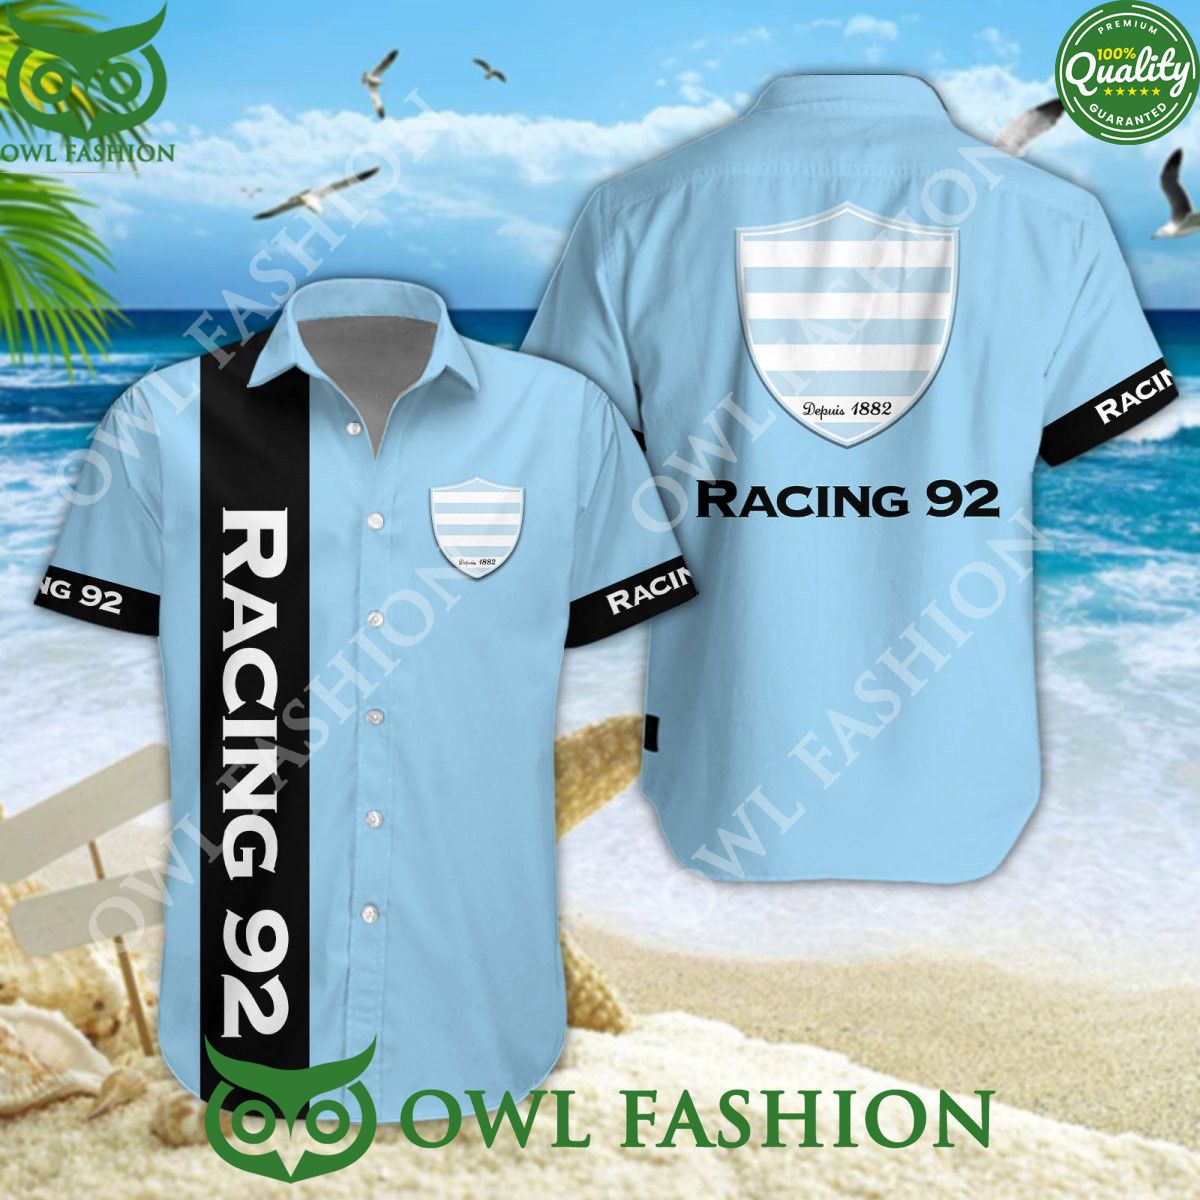 Racing 92 Rugby France Champion Top 14 Hawaiian Shirt